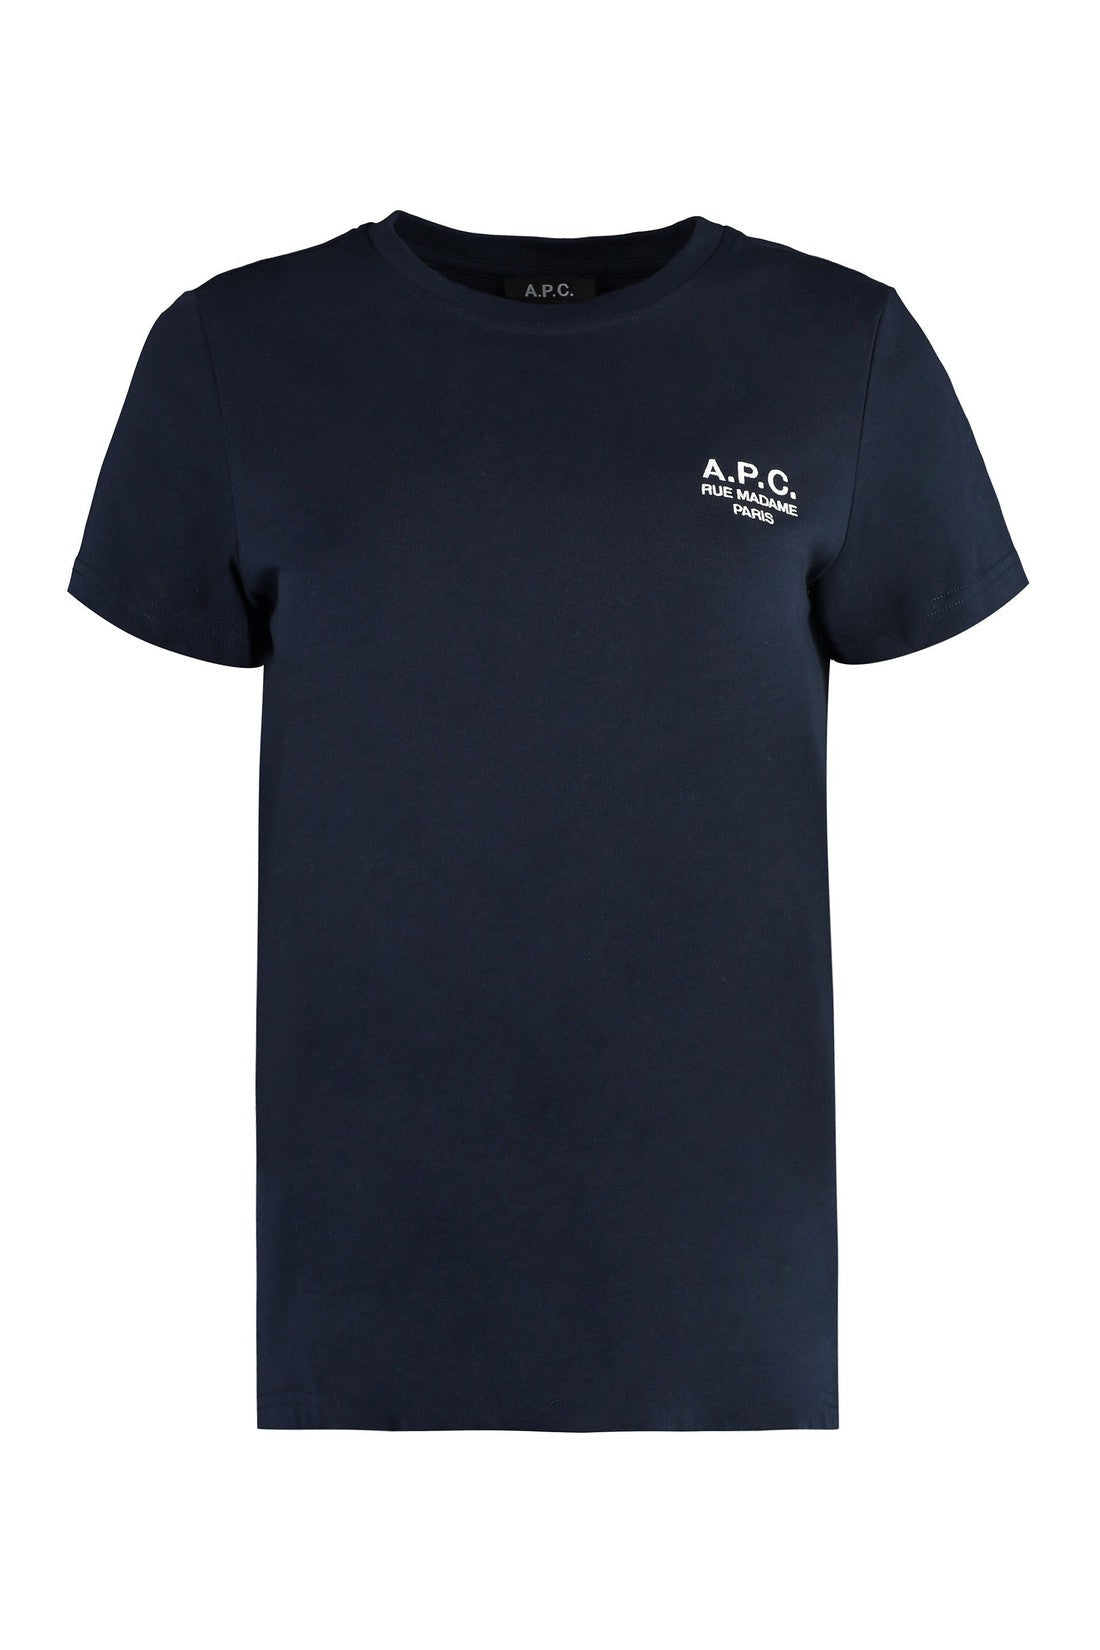 A.P.C.-OUTLET-SALE-Denise Cotton crew-neck T-shirt-ARCHIVIST